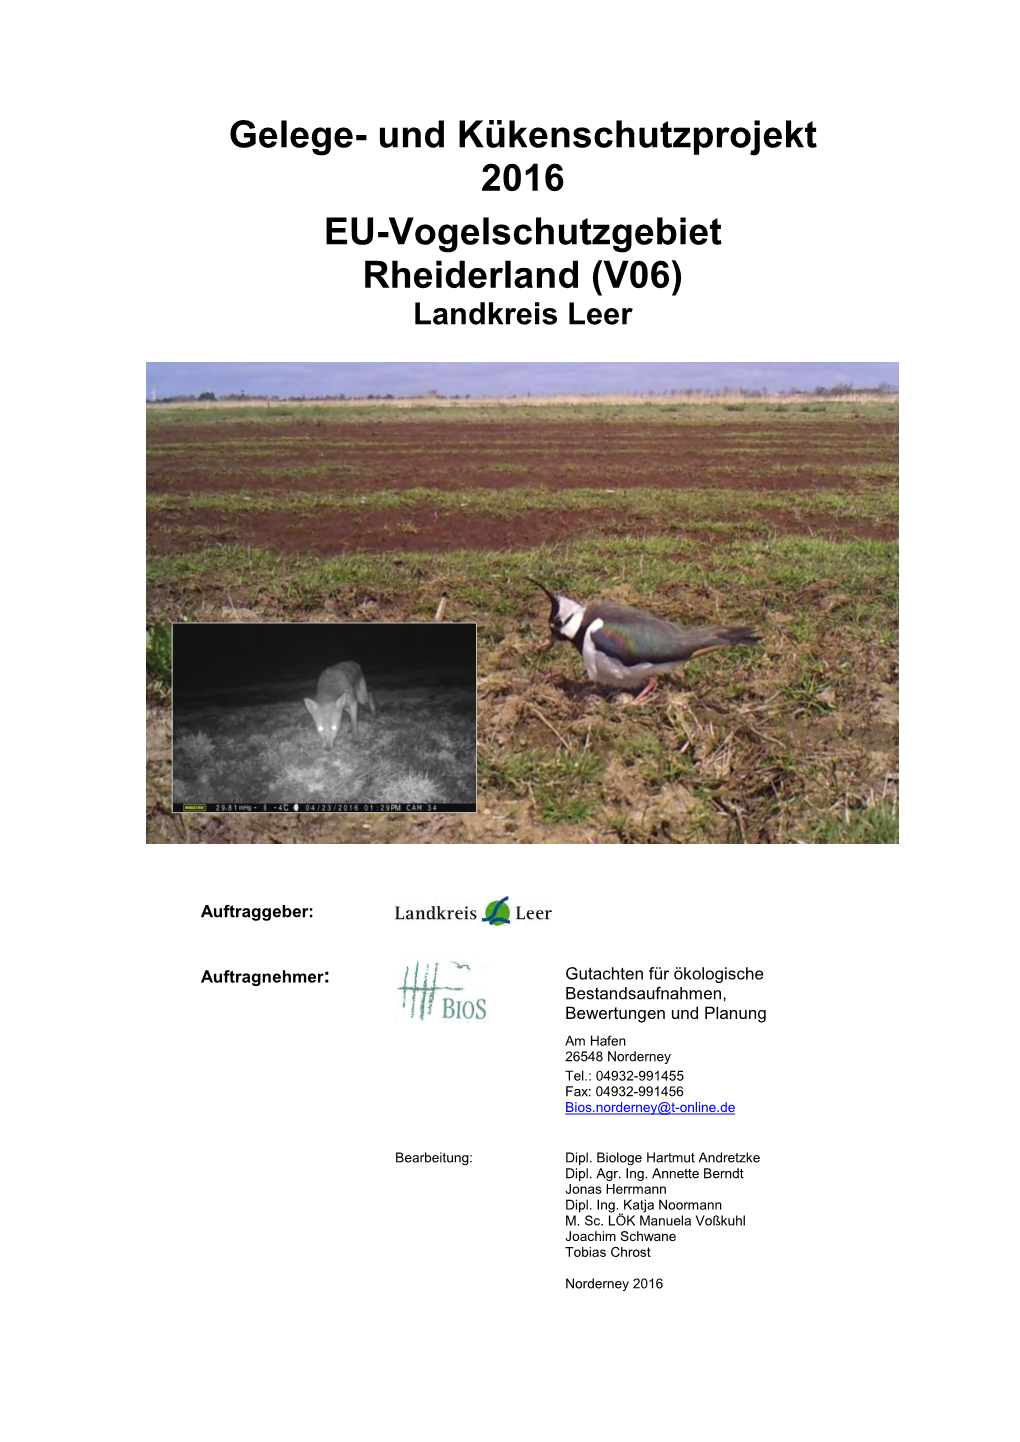 Gelege- Und Kükenschutzprojekt 2016 EU-Vogelschutzgebiet Rheiderland (V06) Landkreis Leer